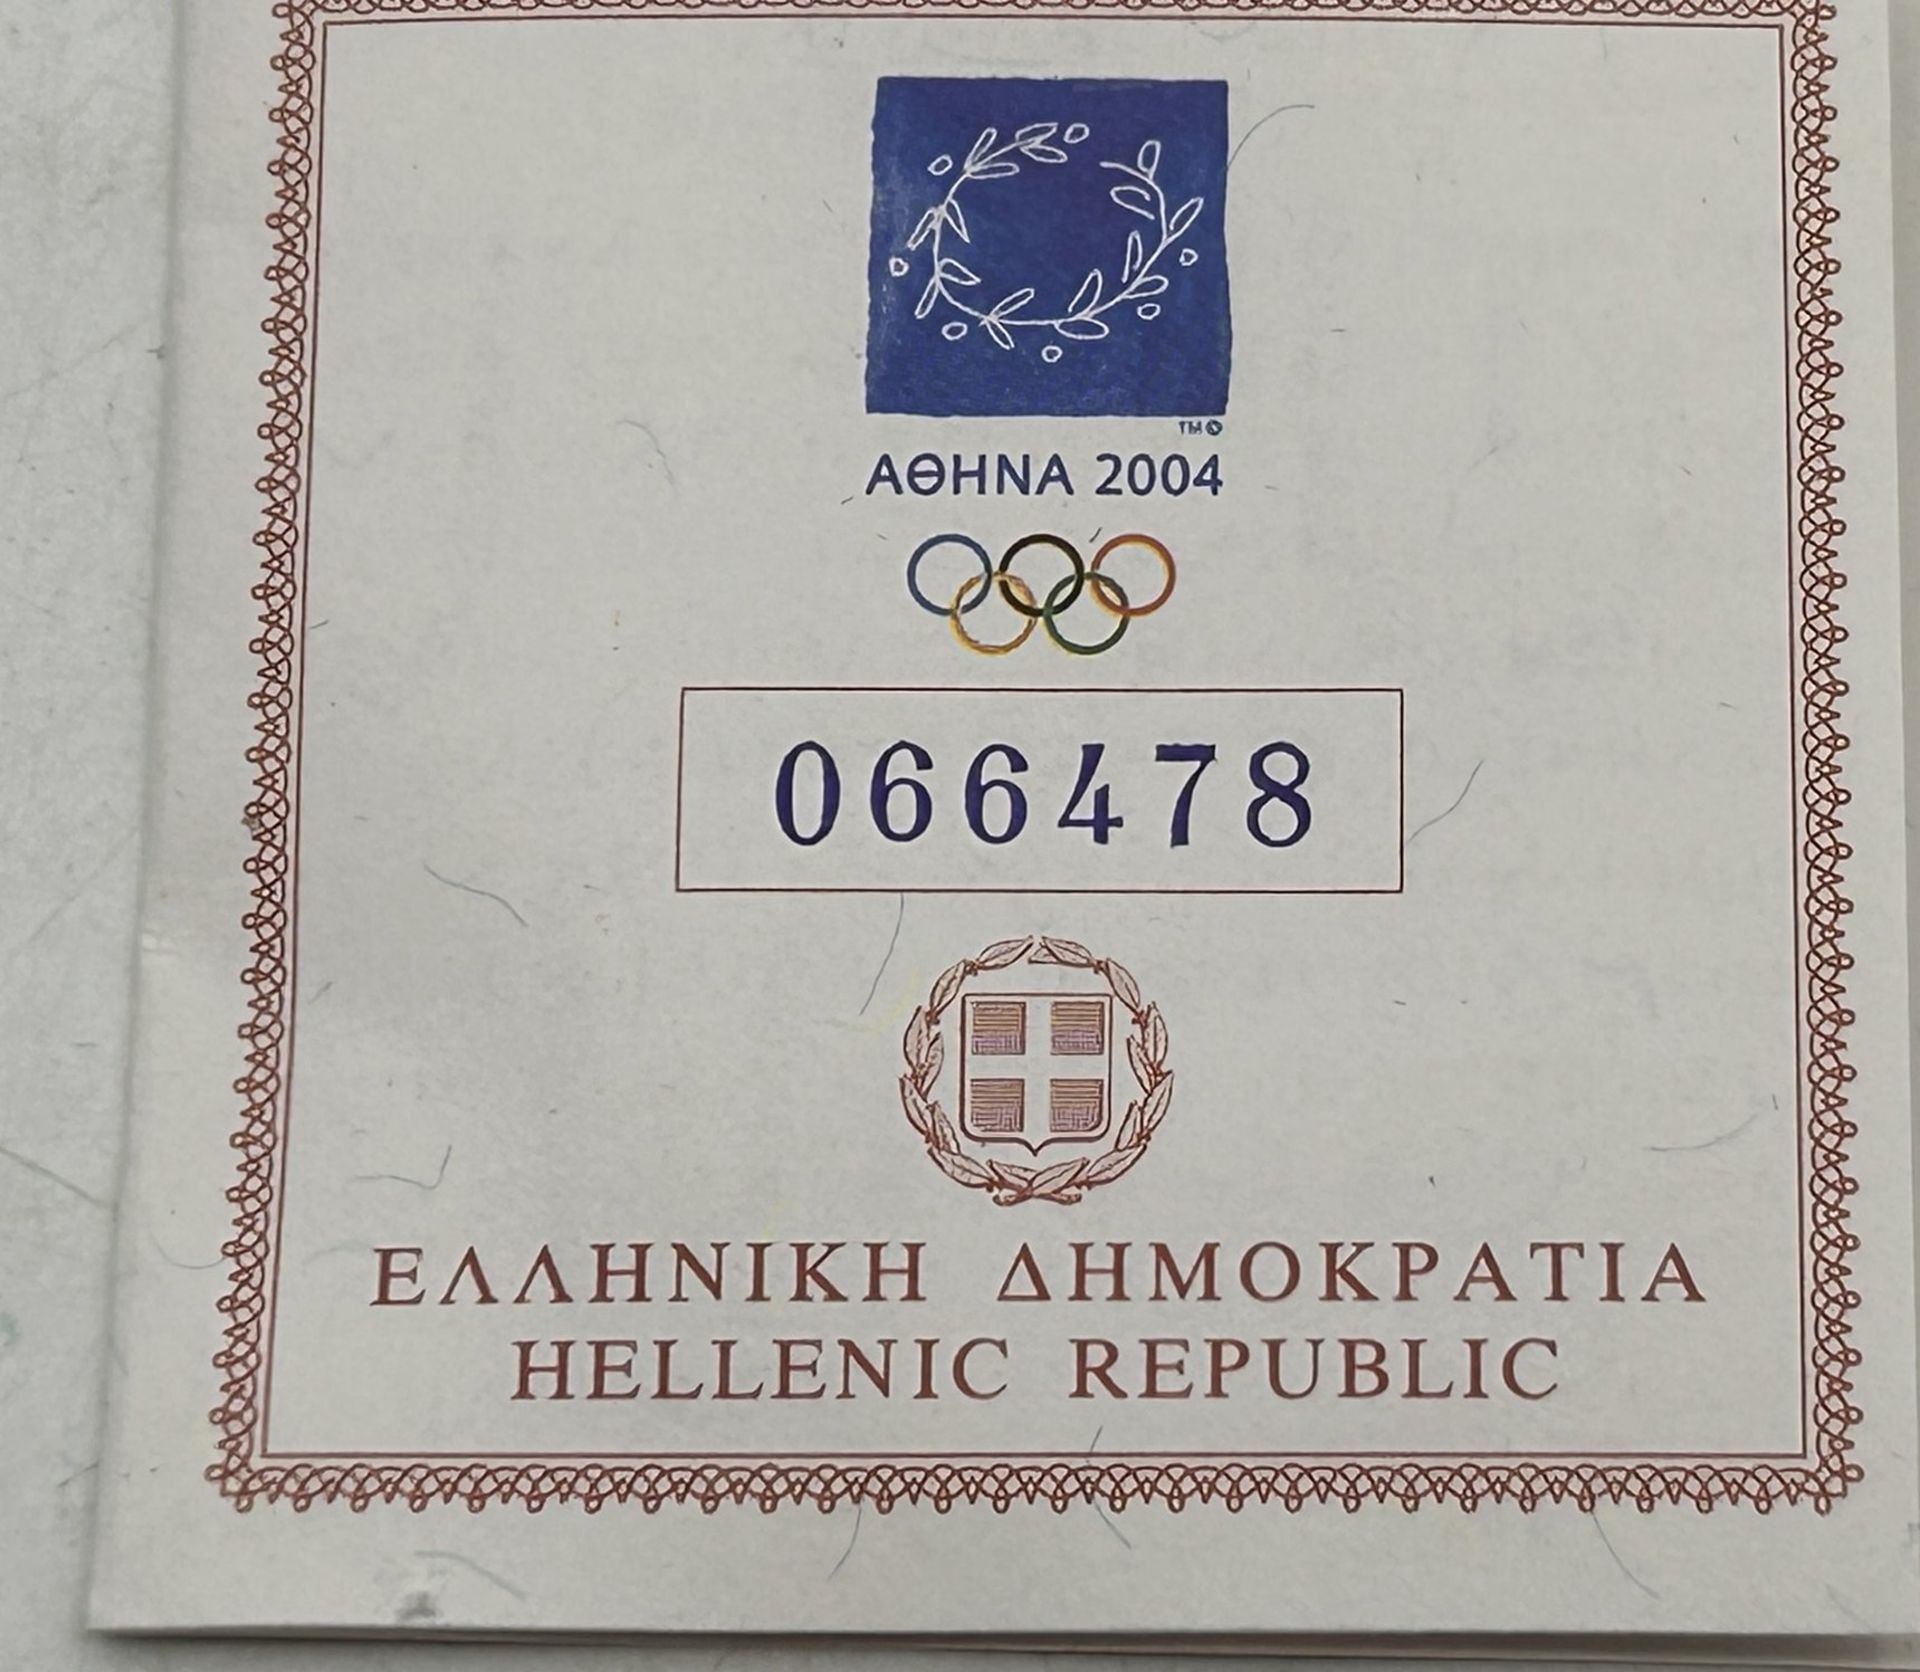 100 Euro Gold-999-, Athen 2004 Griechenland,polierte Platte,  Boxed mit polierter Platte, 10 gr. - Bild 3 aus 5